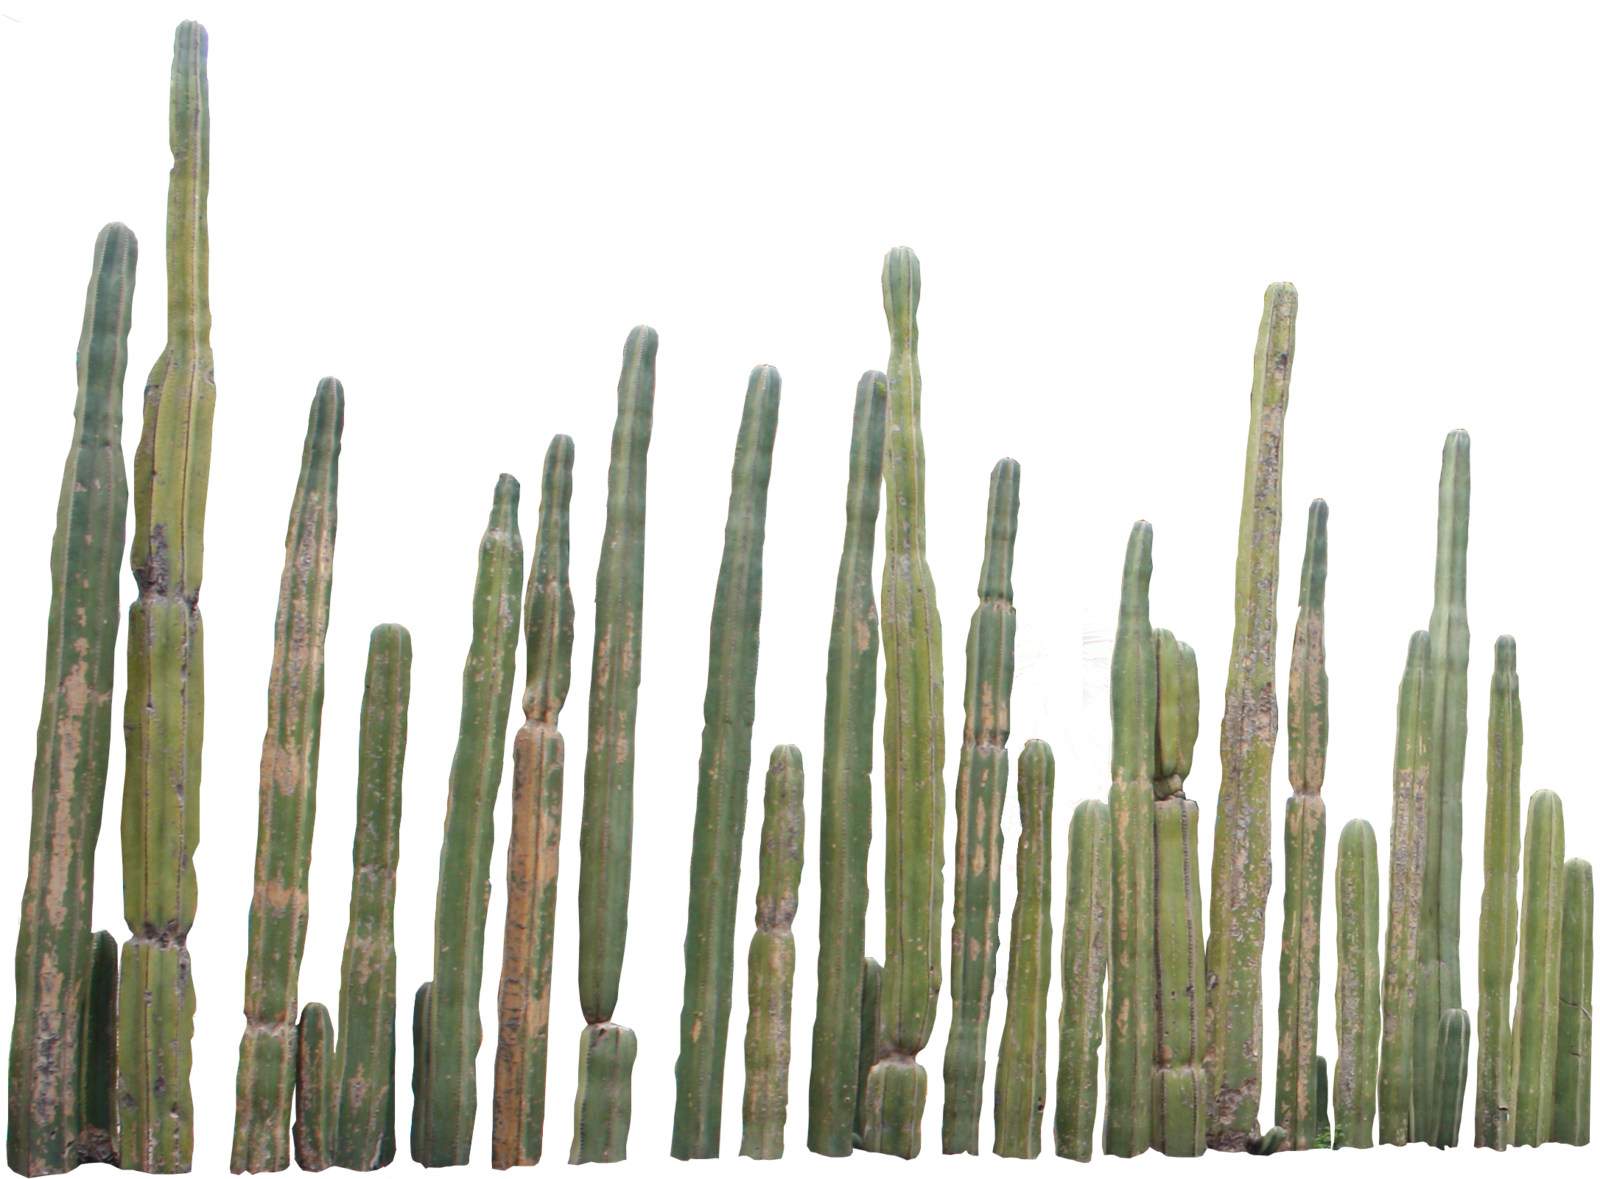 Cactus PNG File